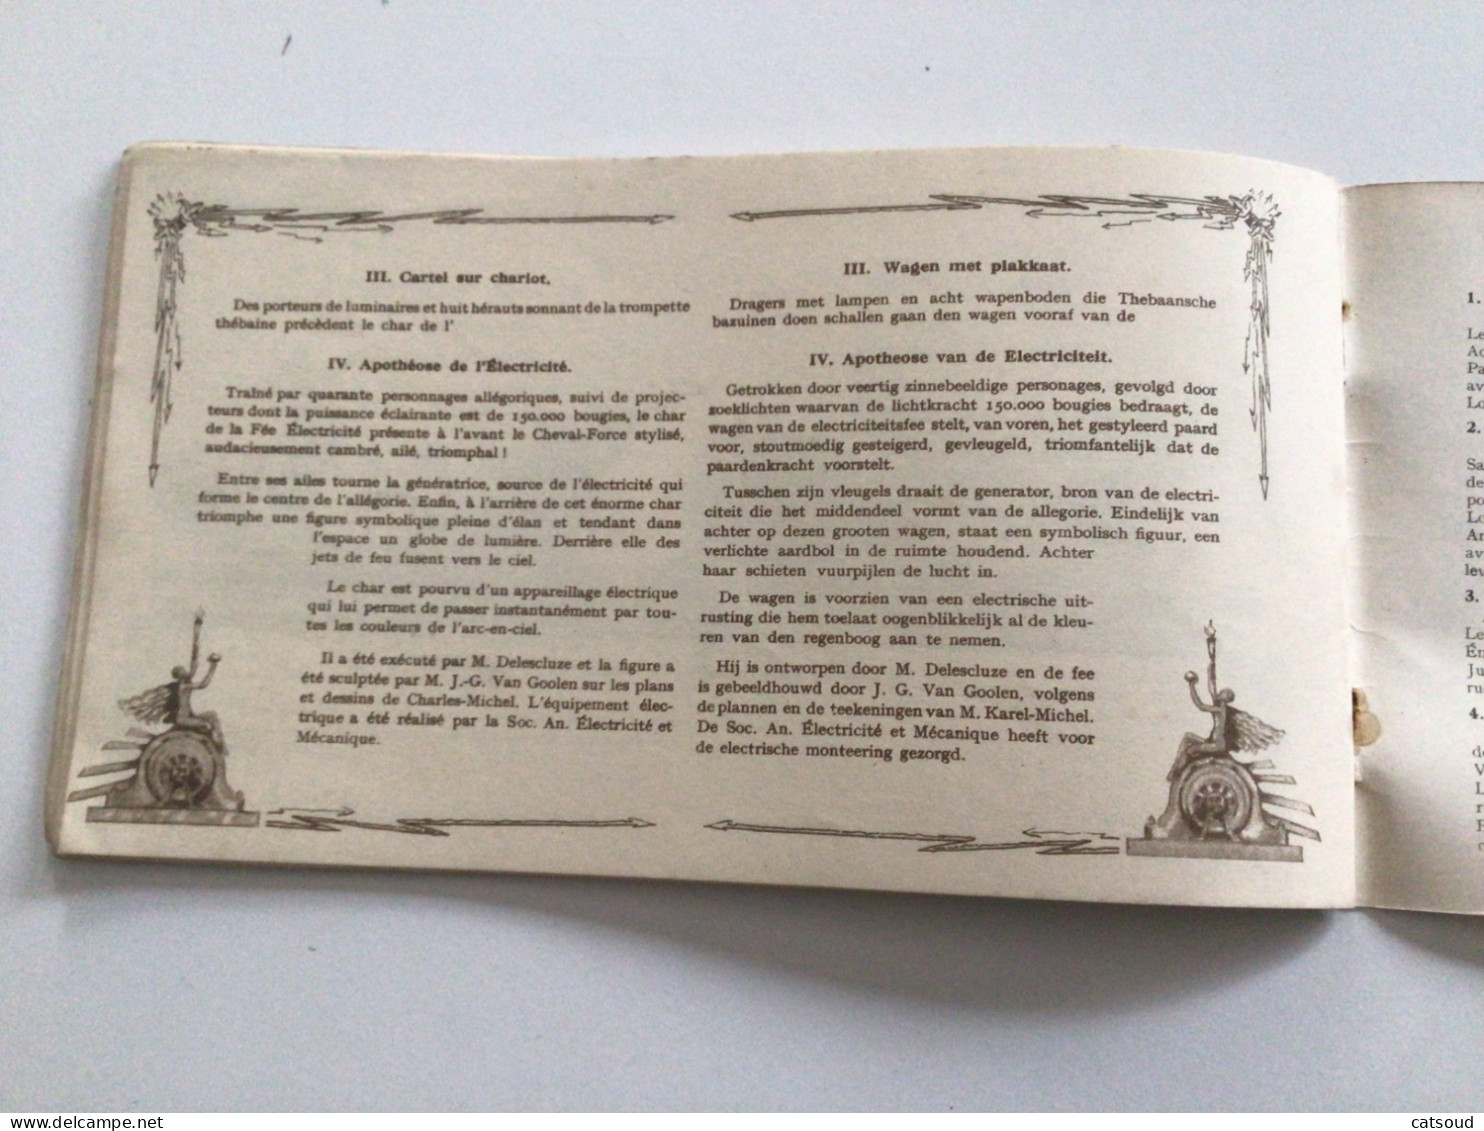 Ancien programme (1930) Comité Provincial du Brabant des Fêtes du Centenaire Grand Cortège Lumineux